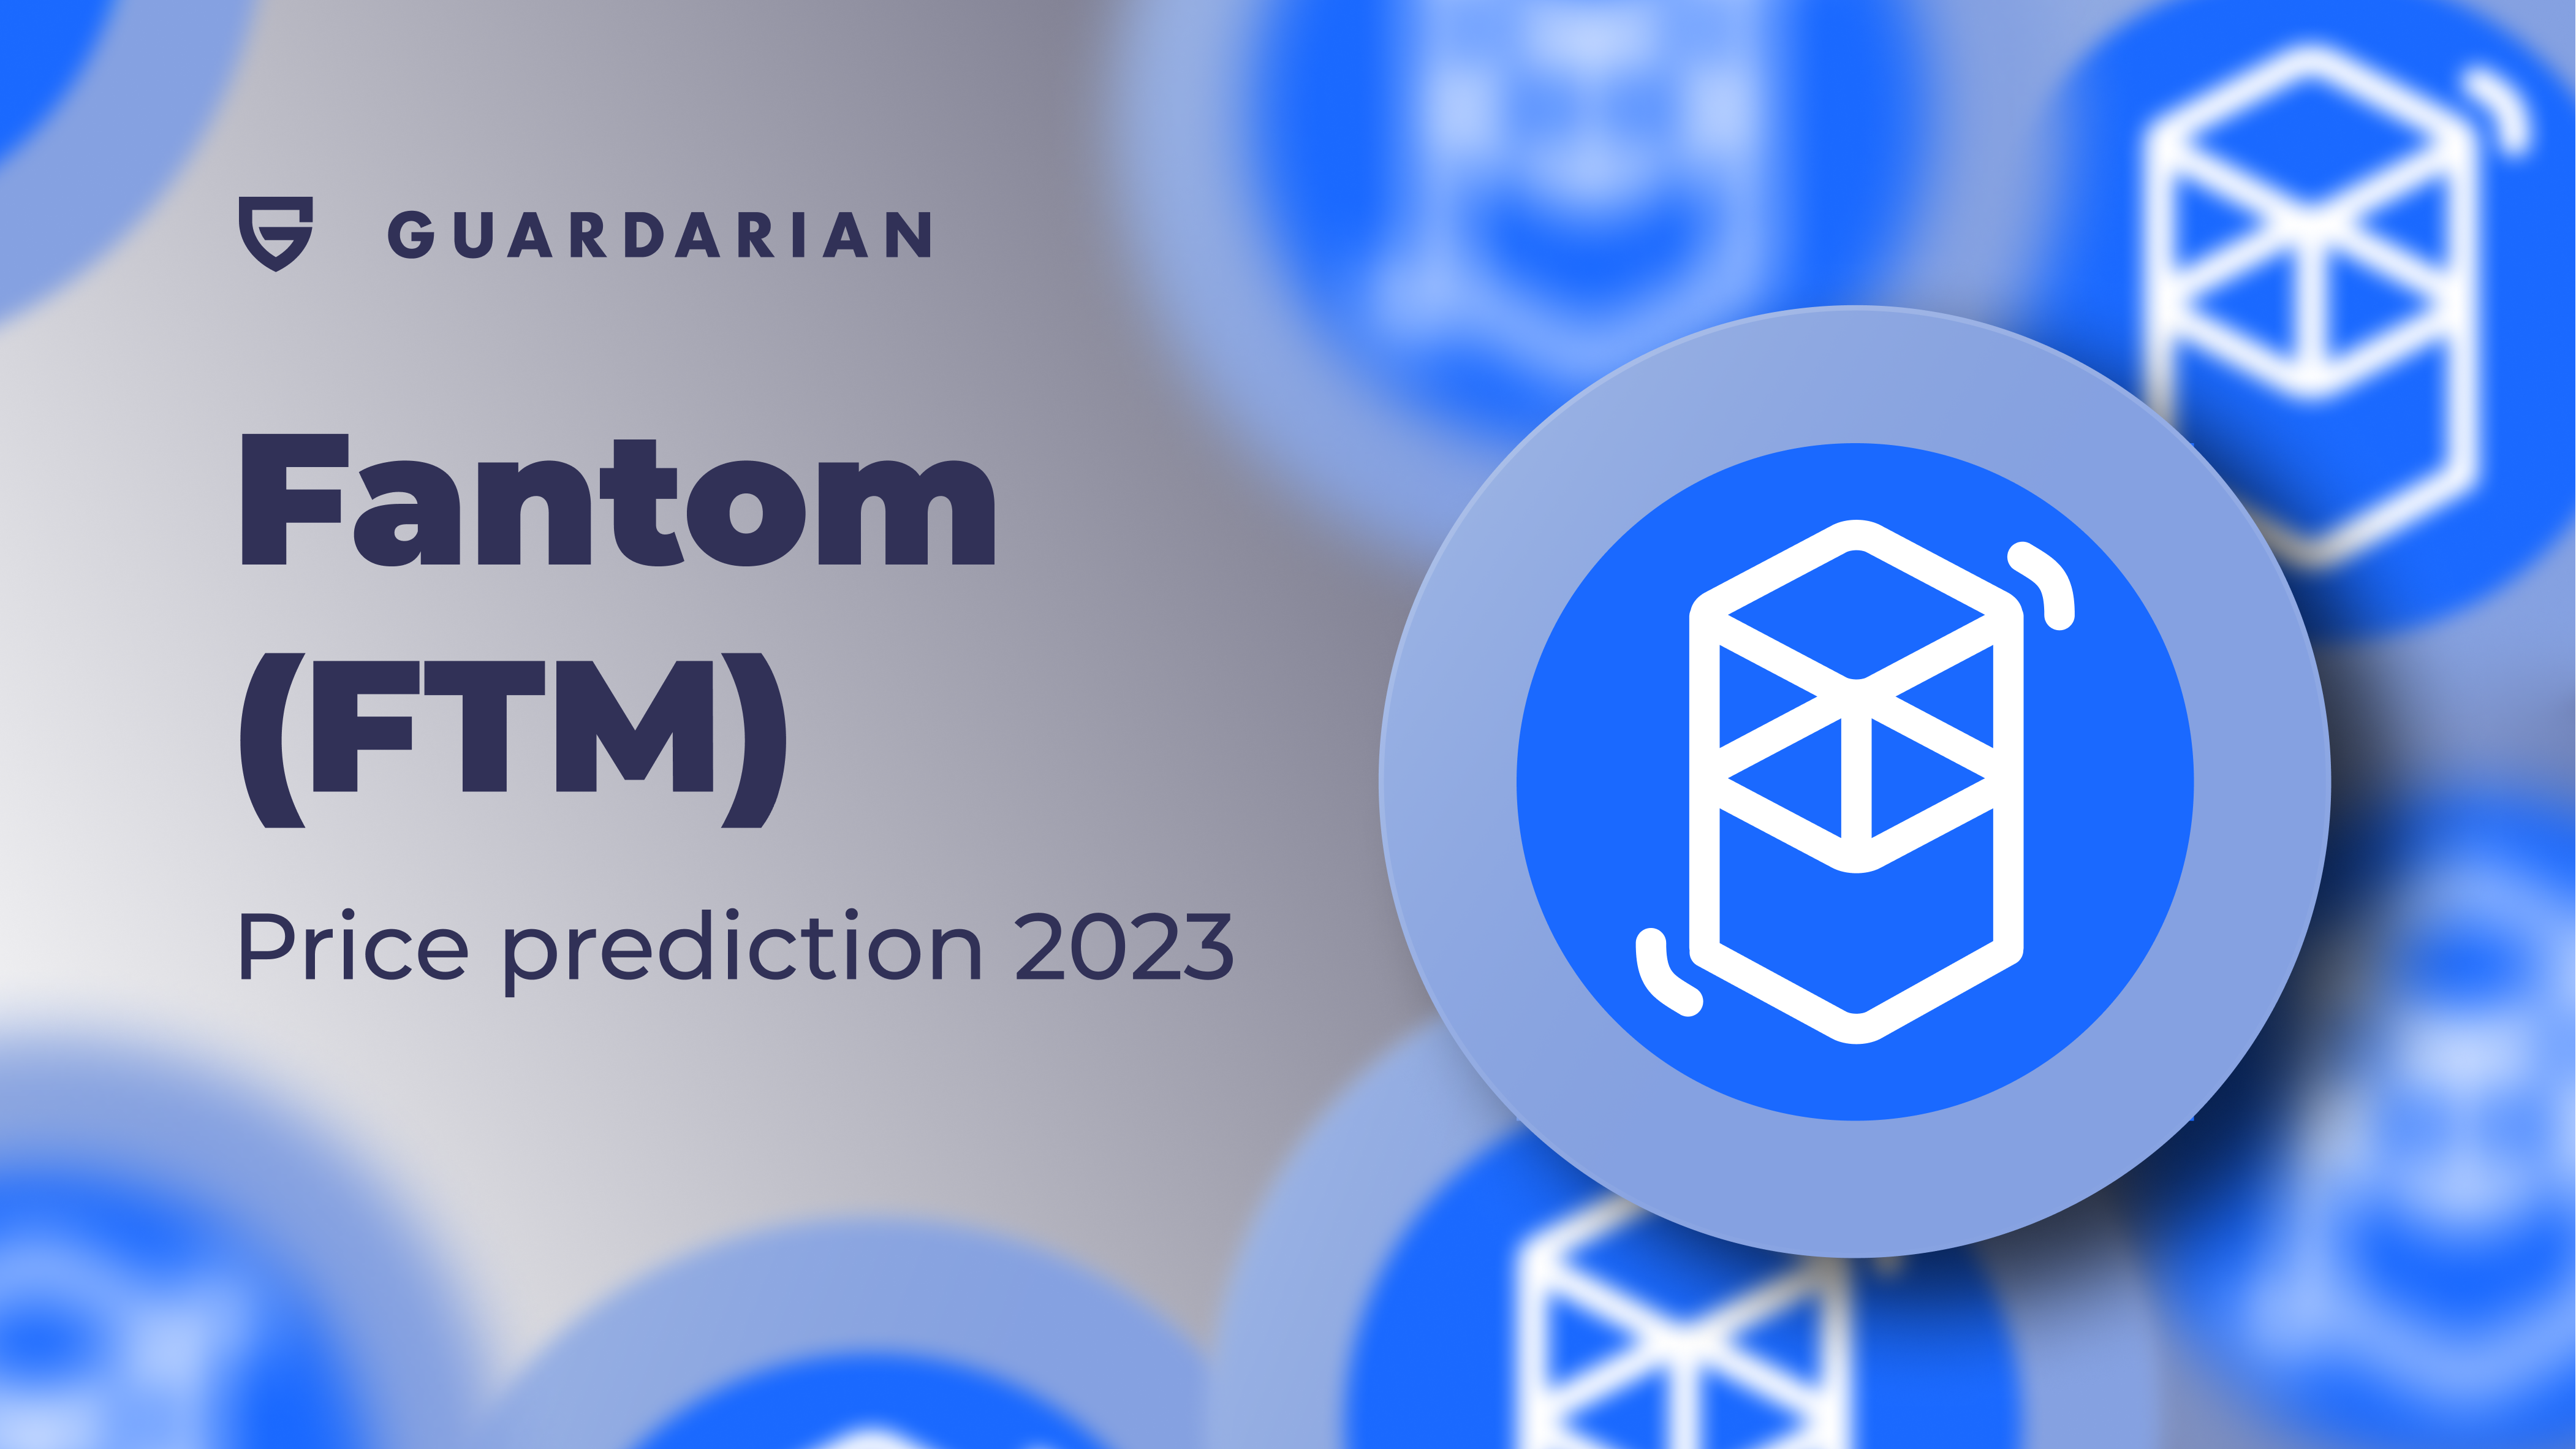 Fantom (FTM) price prediction 2023